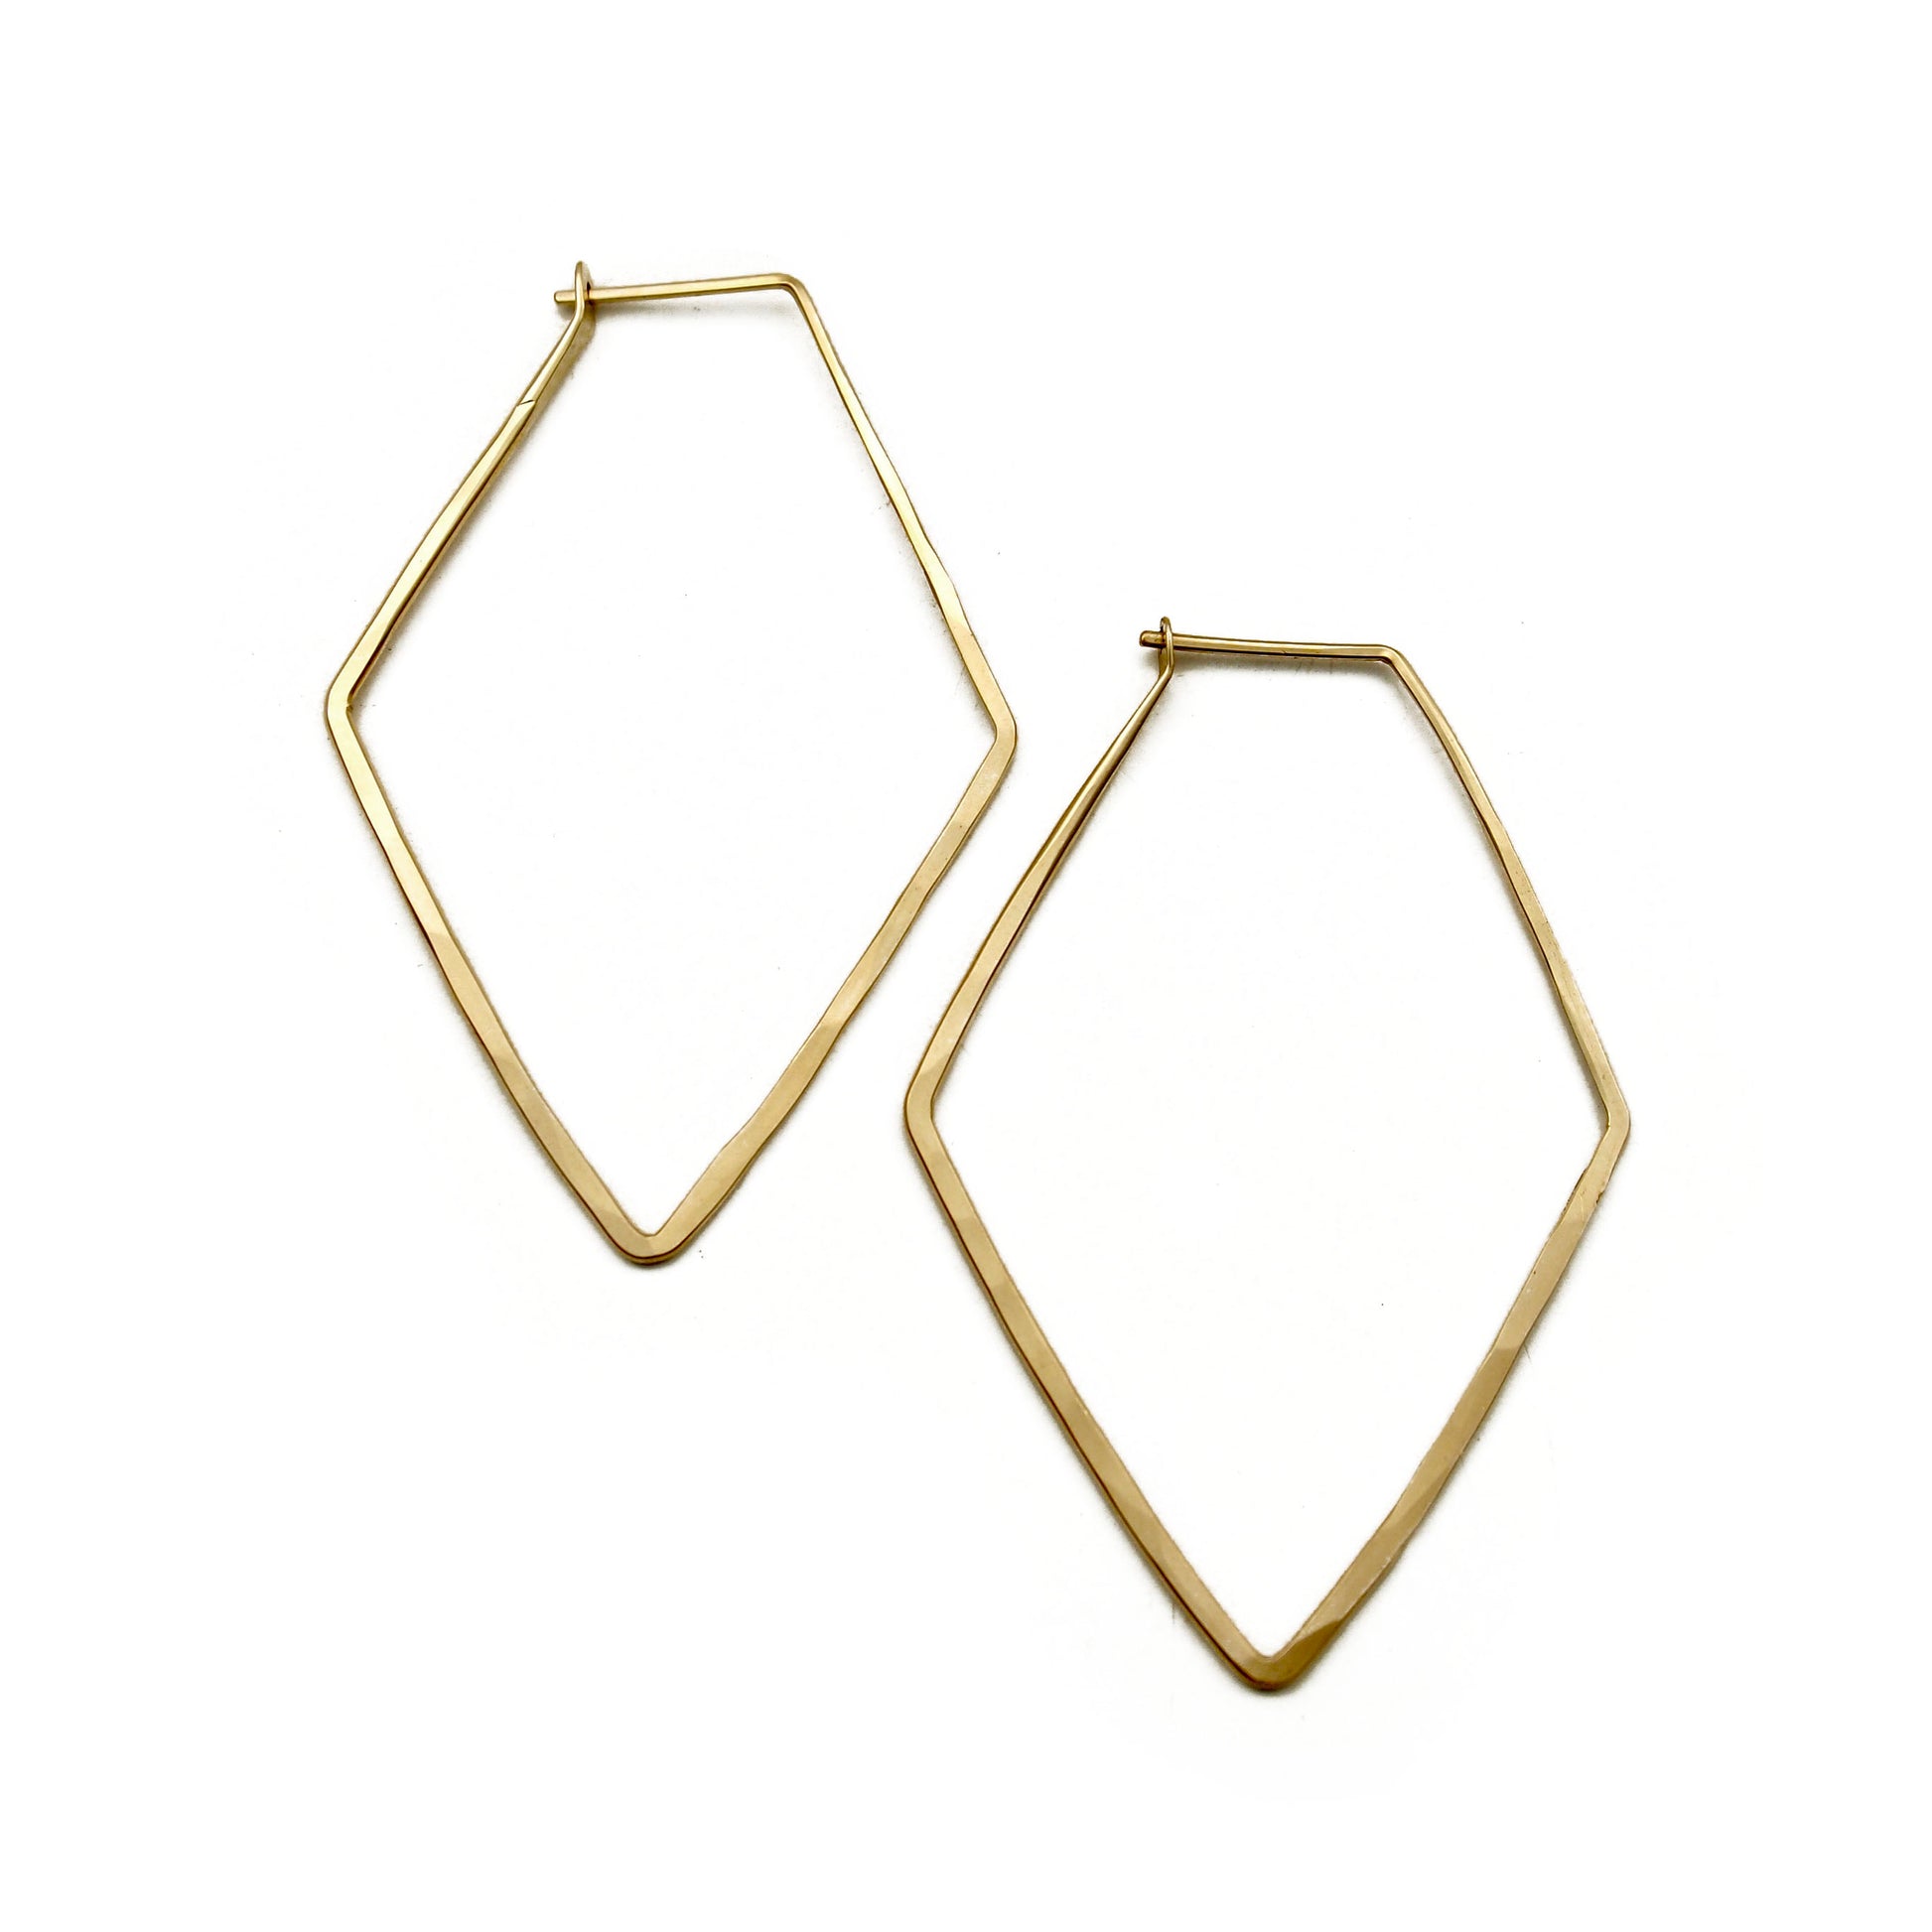 Diamond shaped hoop earrings in gold.